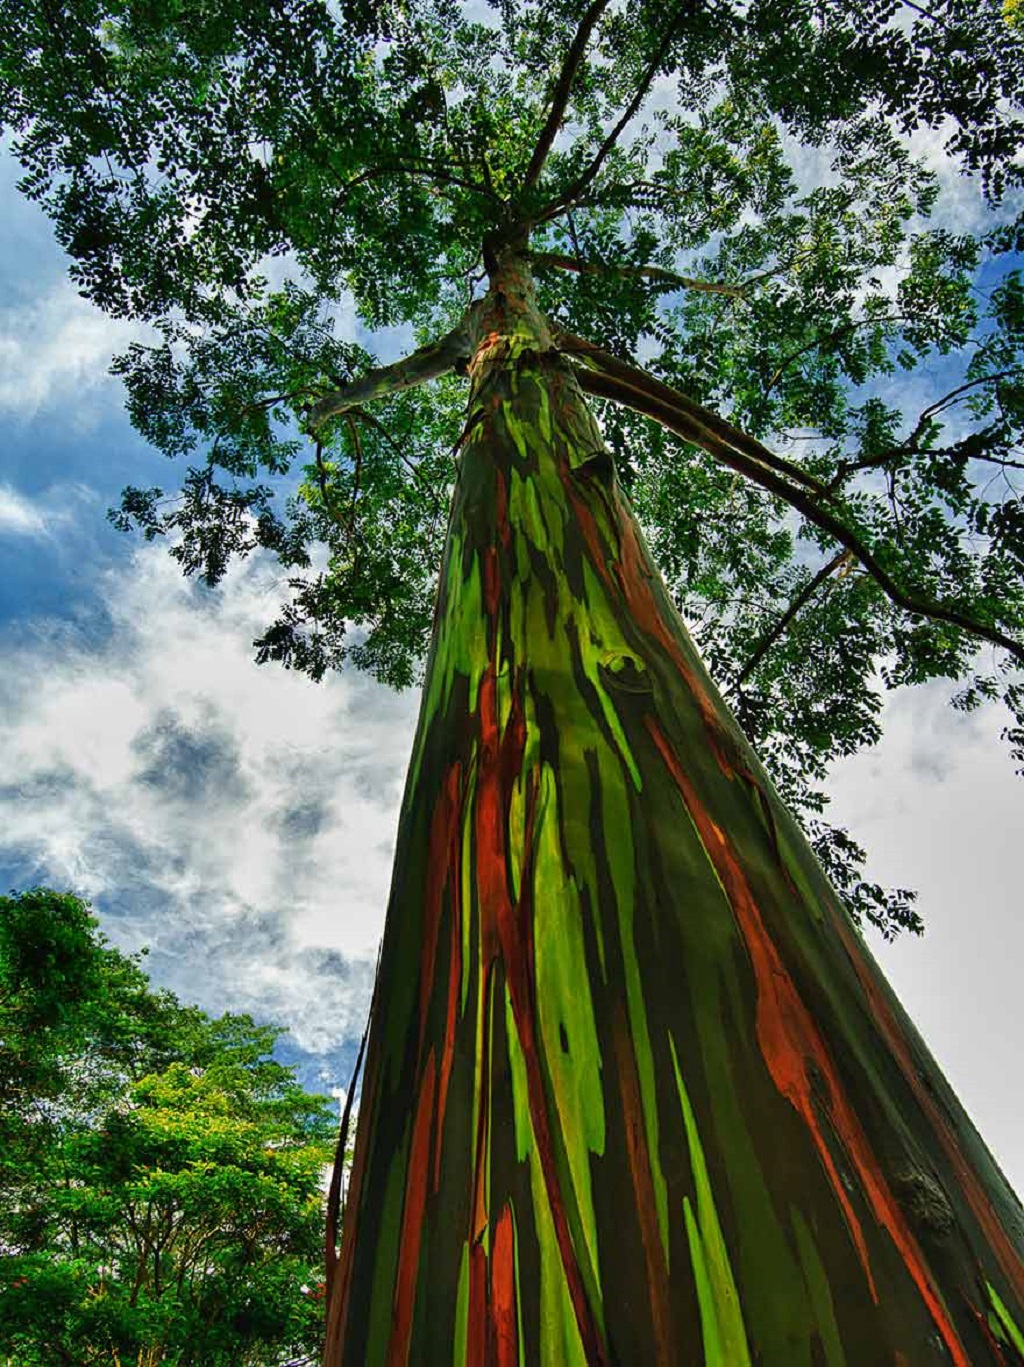 The Rainbow Eucalyptus